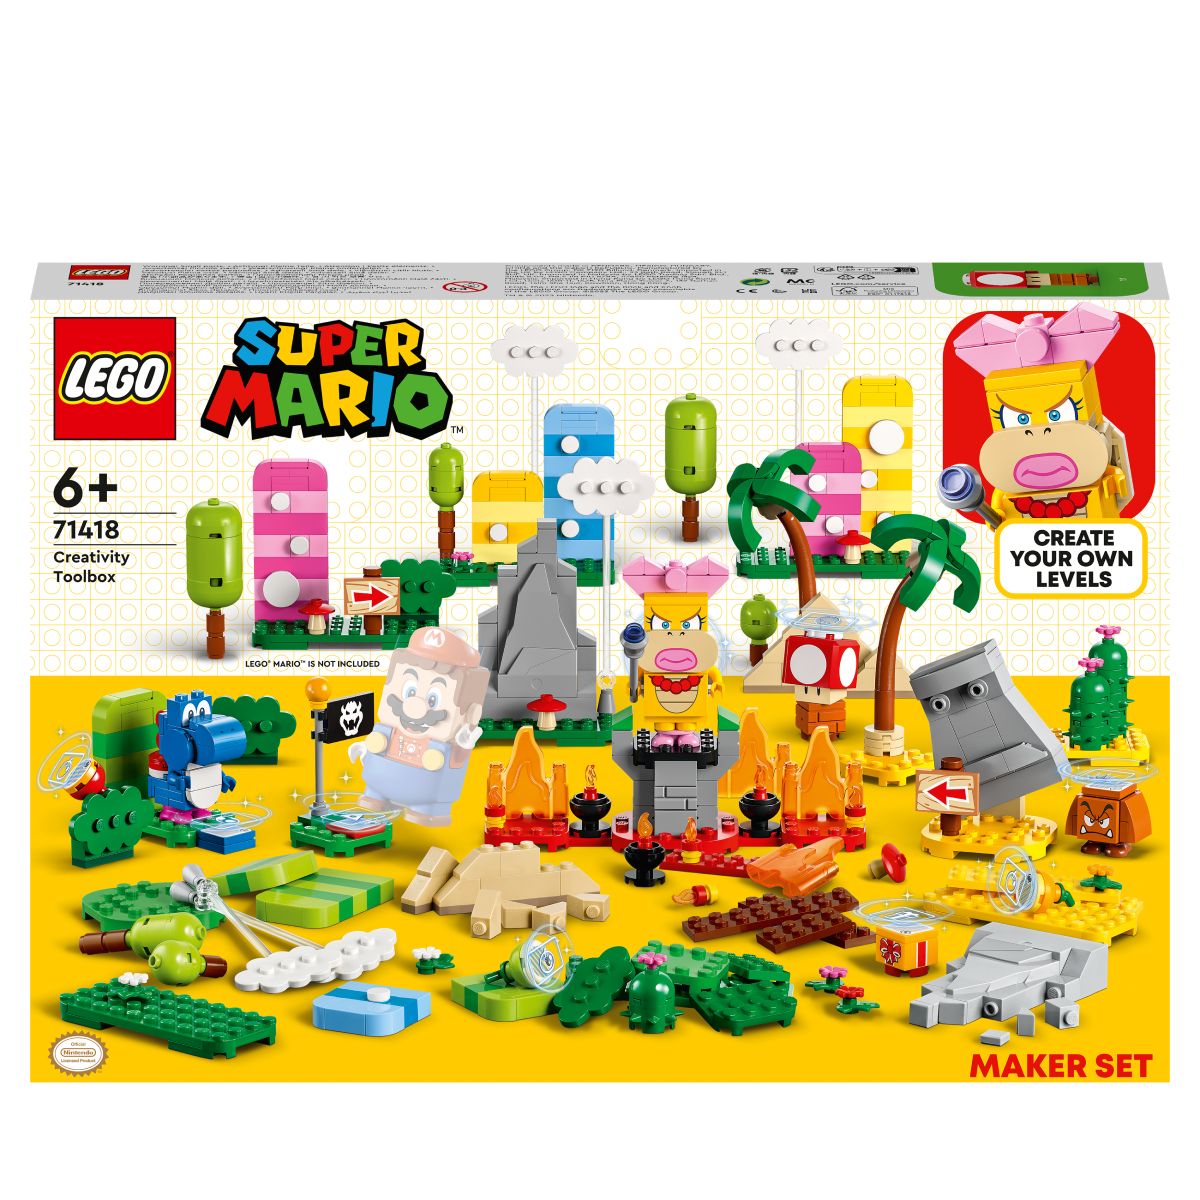 LEGO 71418 SUPER MARIO - CREATIVITY TOOLBOX MAKER SET